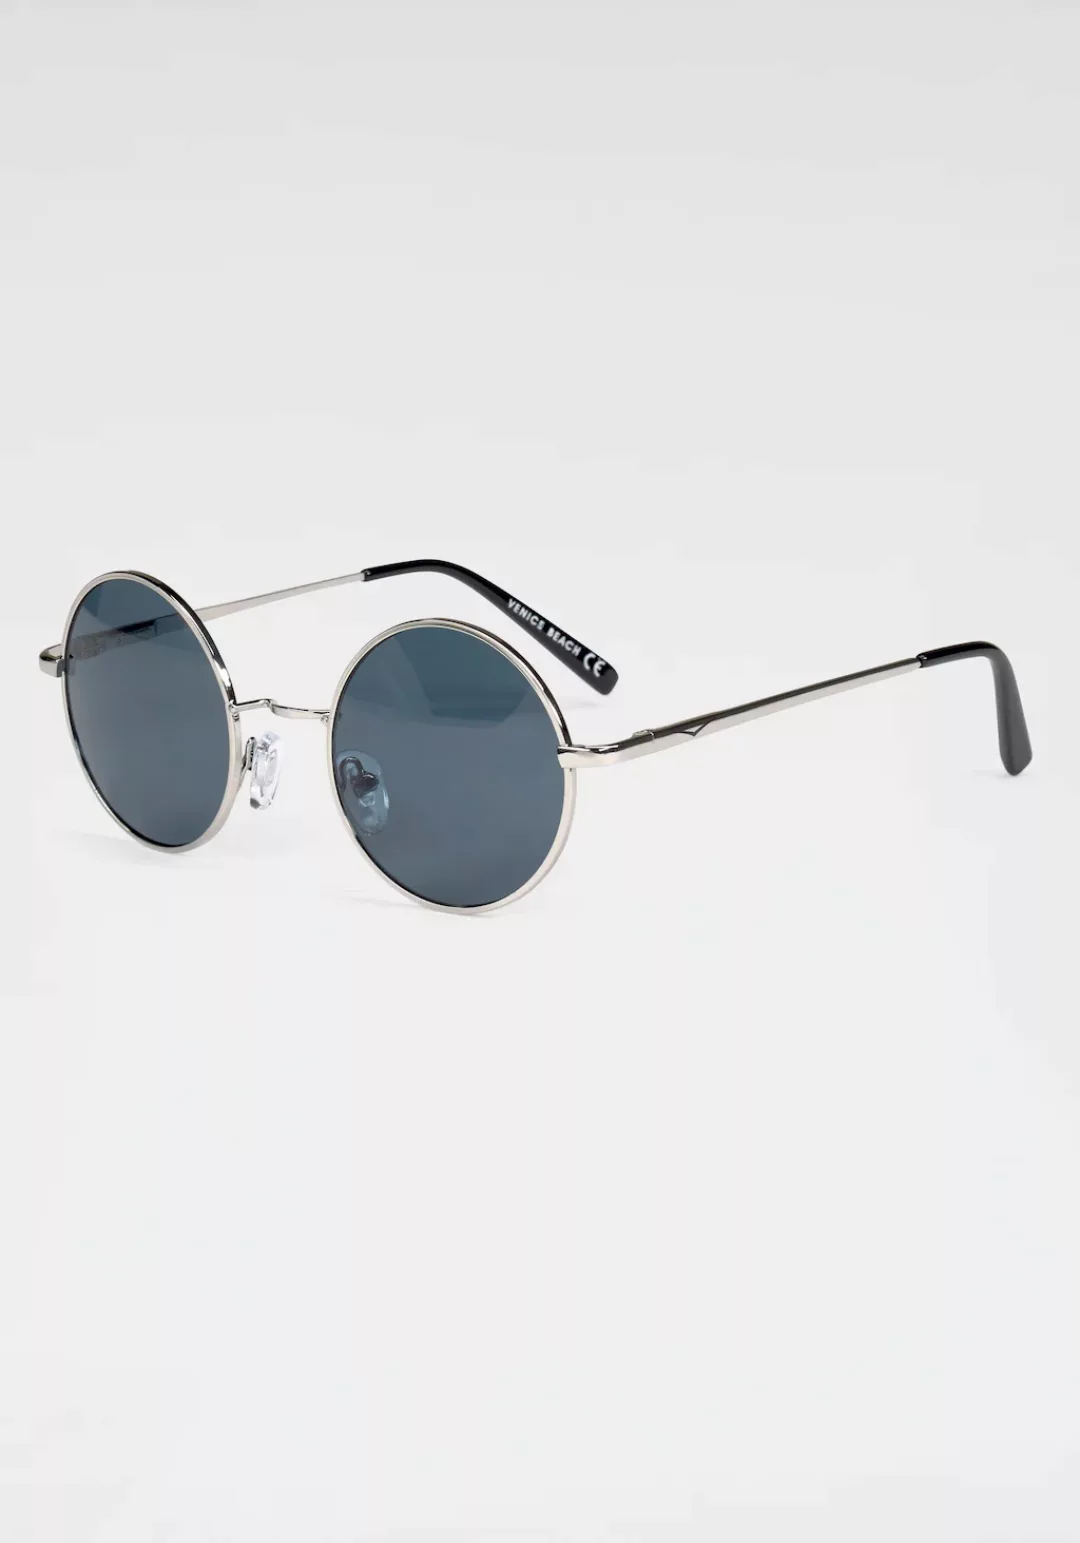 Venice Beach Sonnenbrille, Retro Sonnenbrille günstig online kaufen